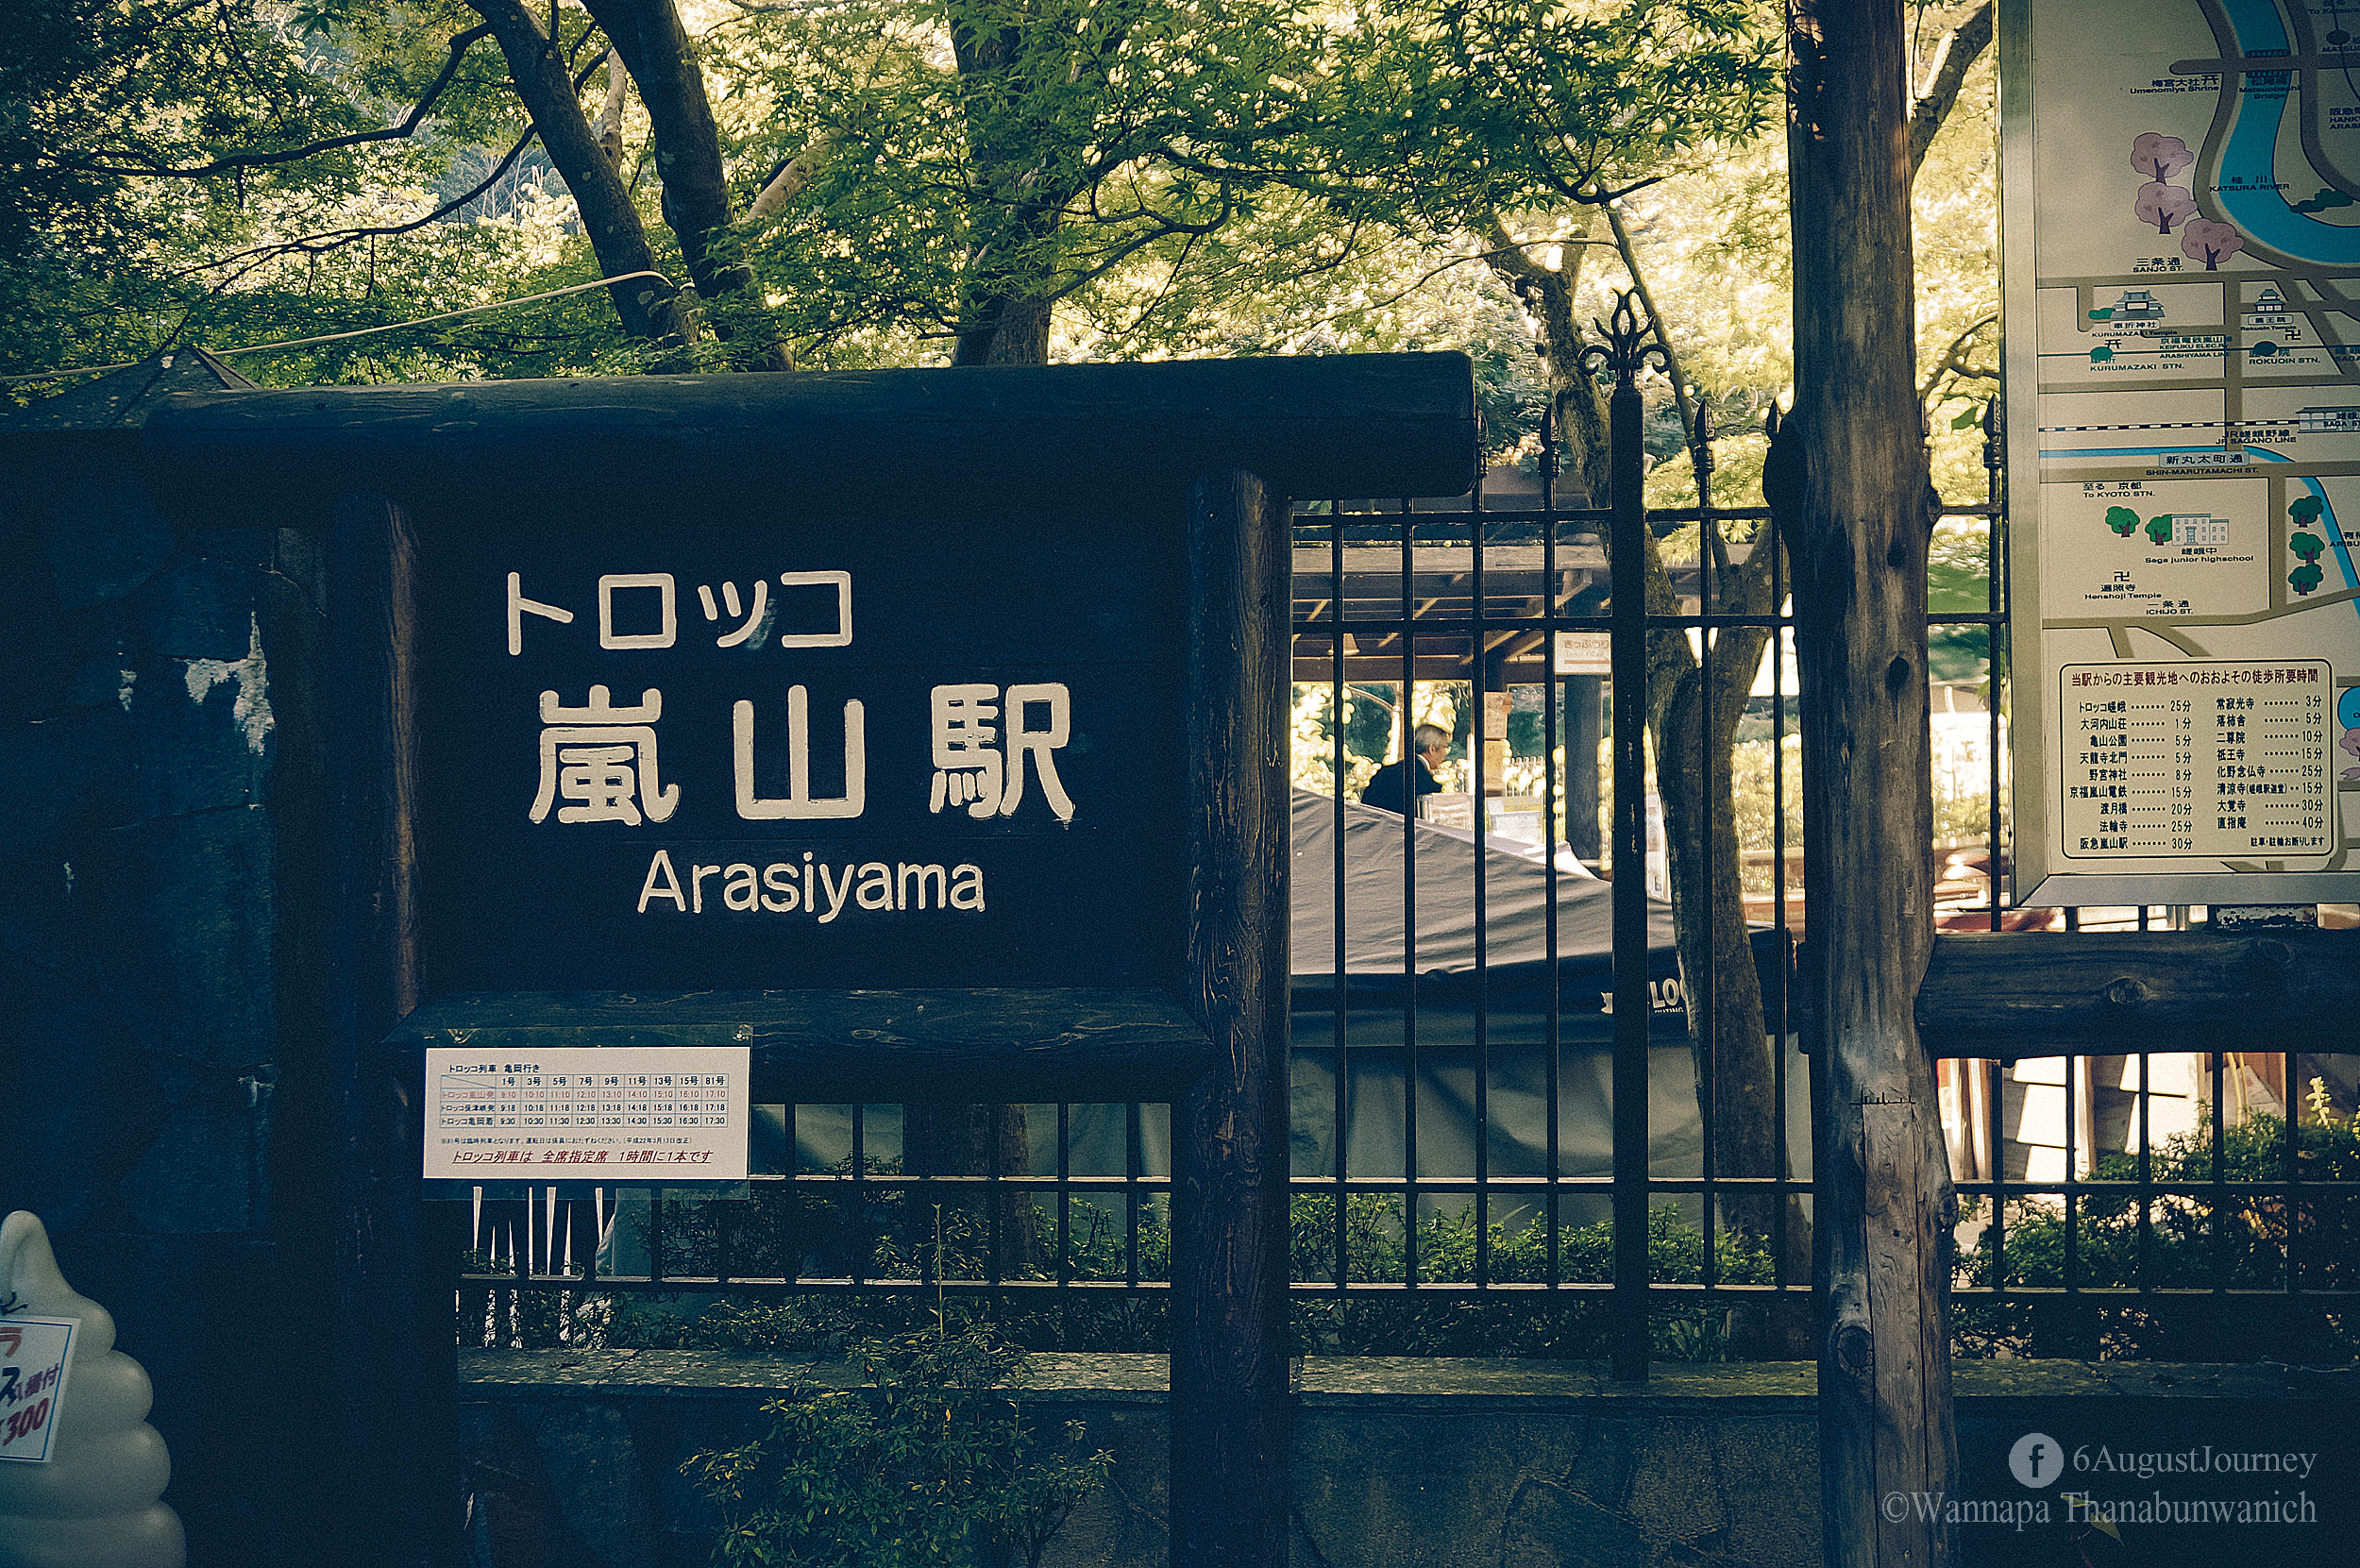 เริ่มต้นกันที่นี่ค่ะ สถานี Arashiyama